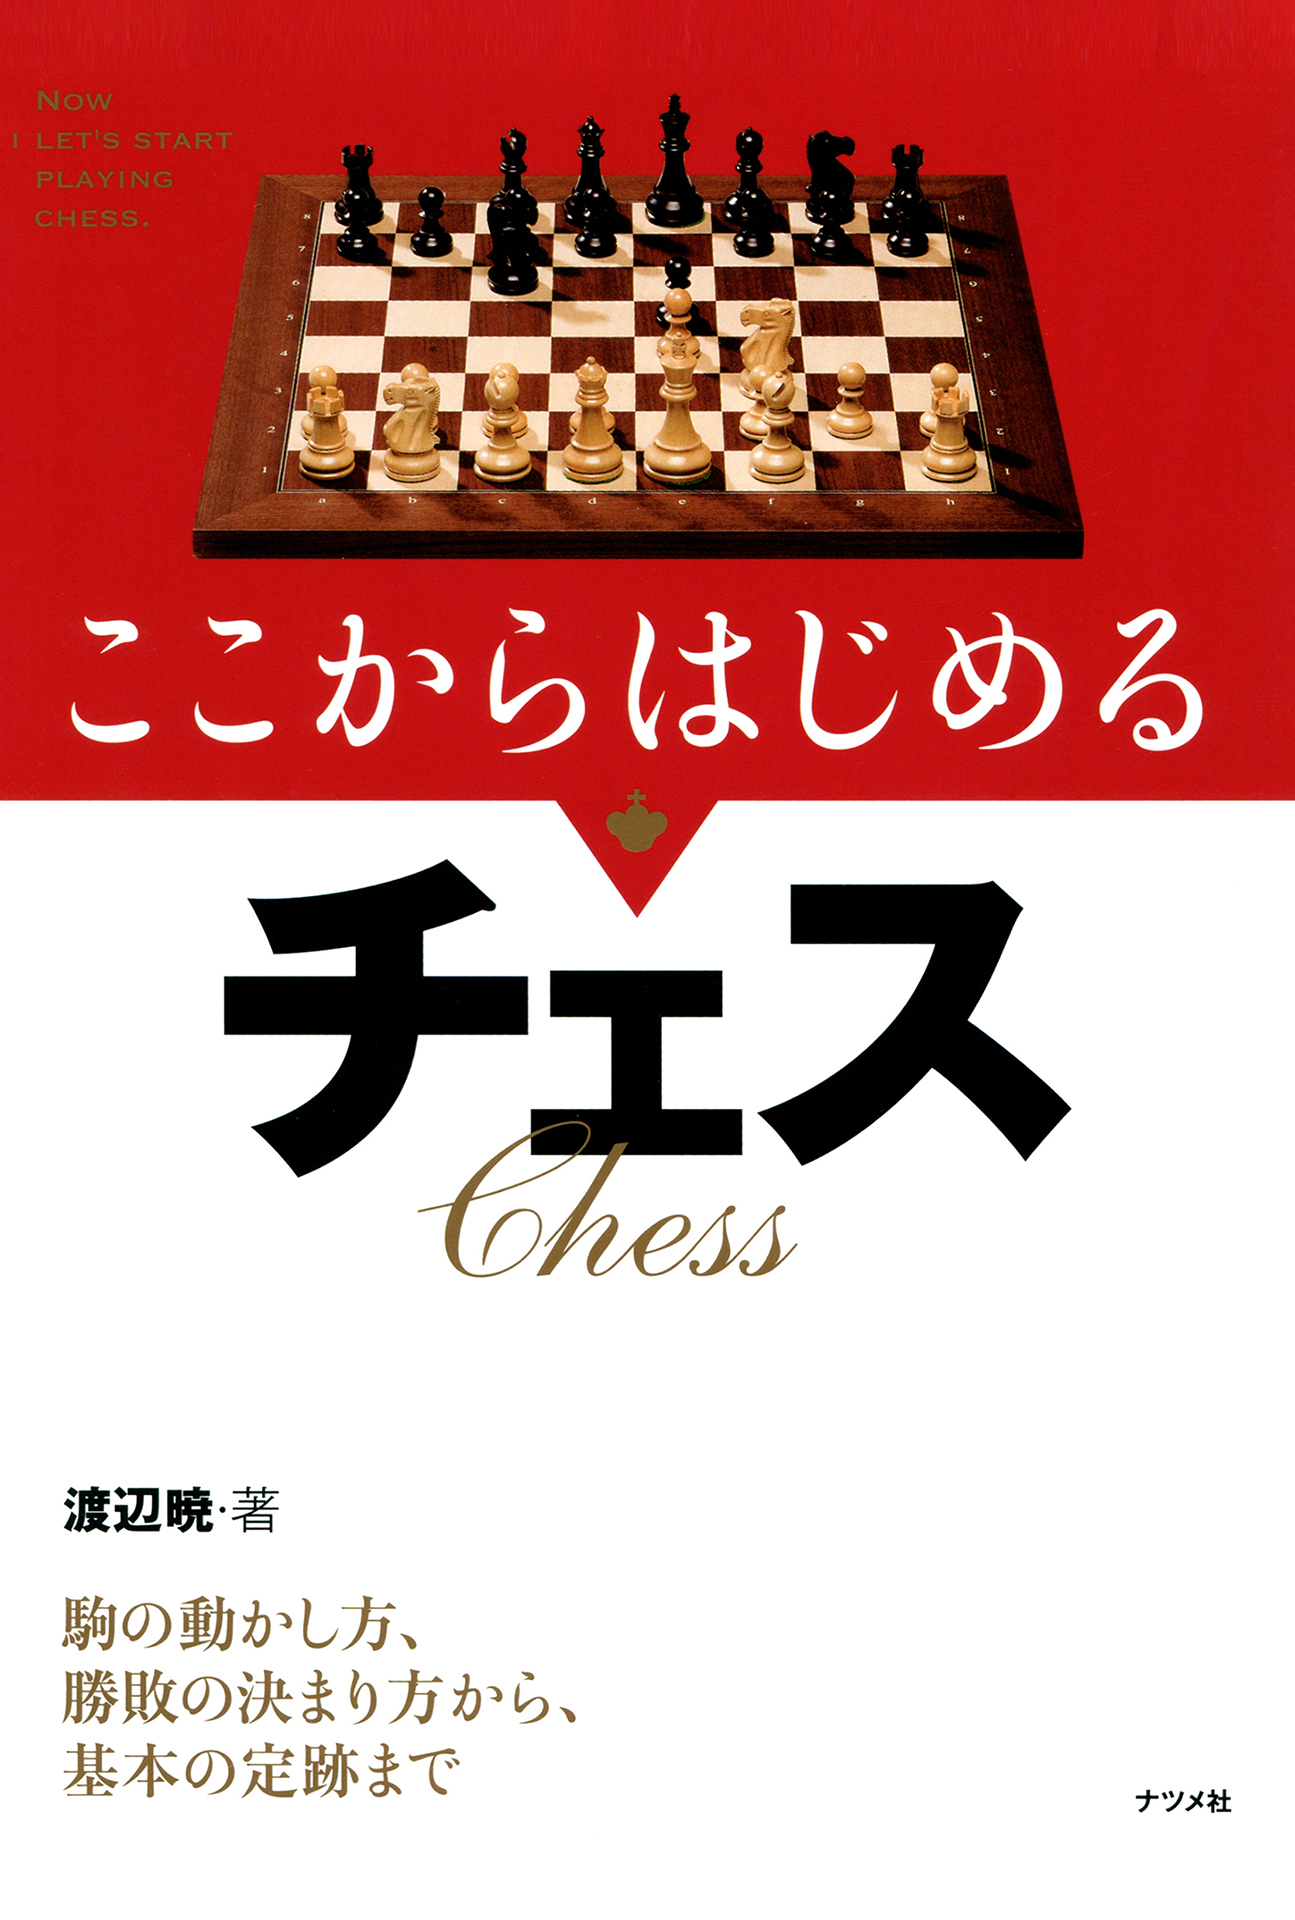 チェス２セット 初心者用書籍セット チェスを１から始める方向けチェス 